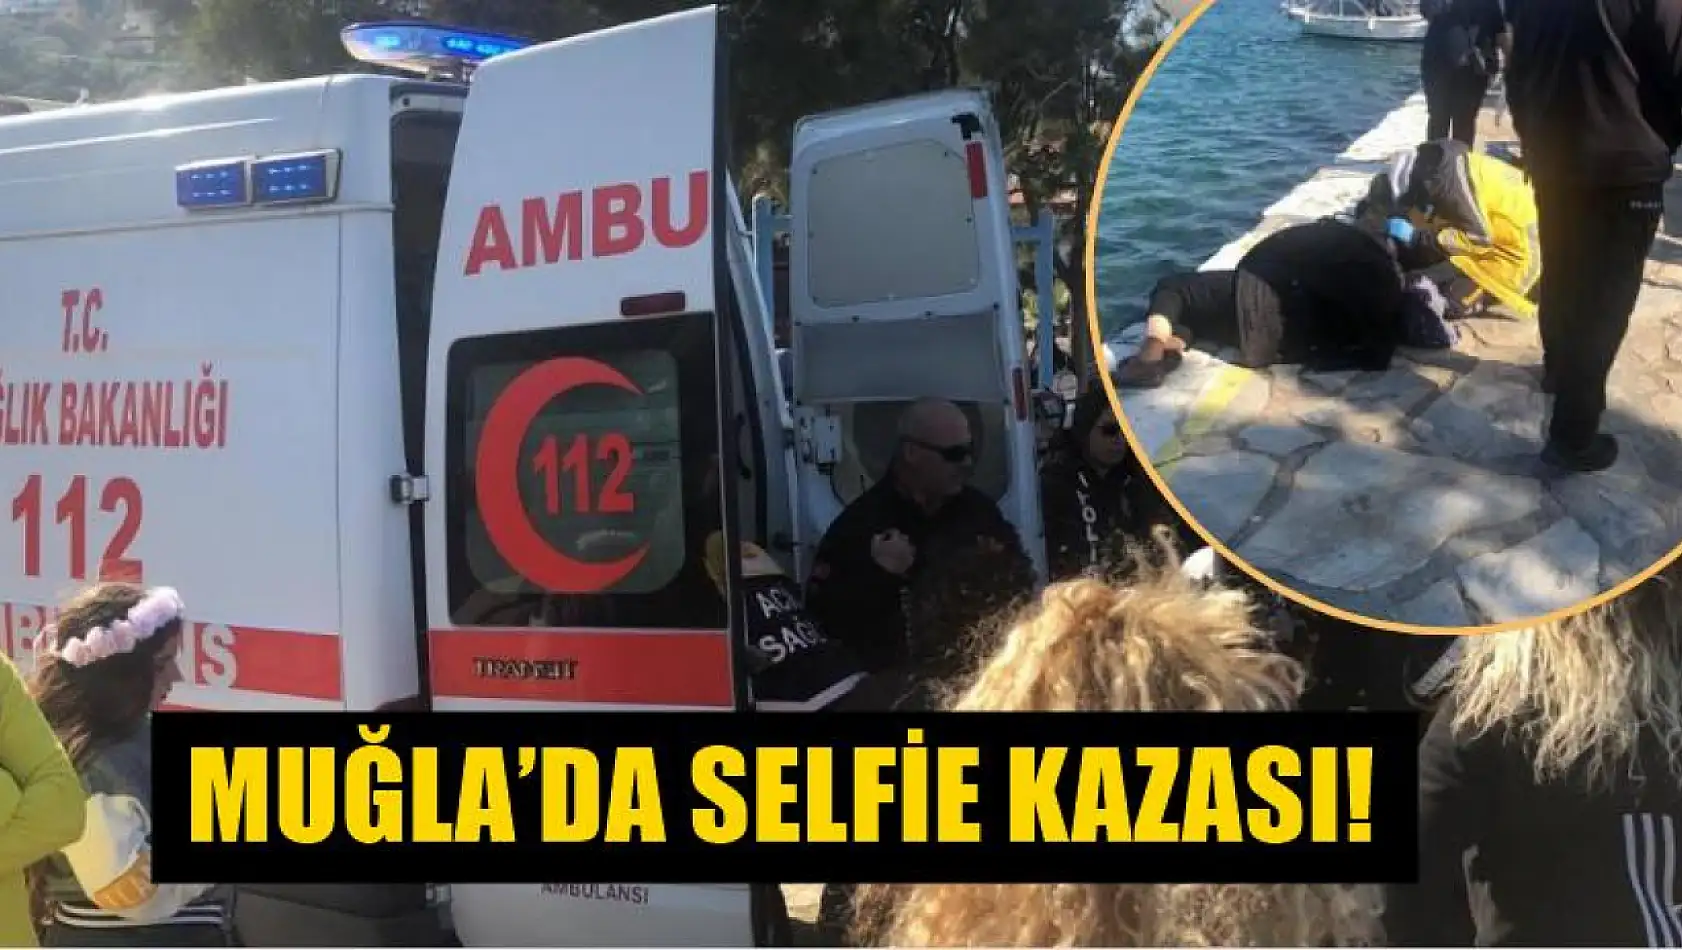 Muğla'da selfie kazası!